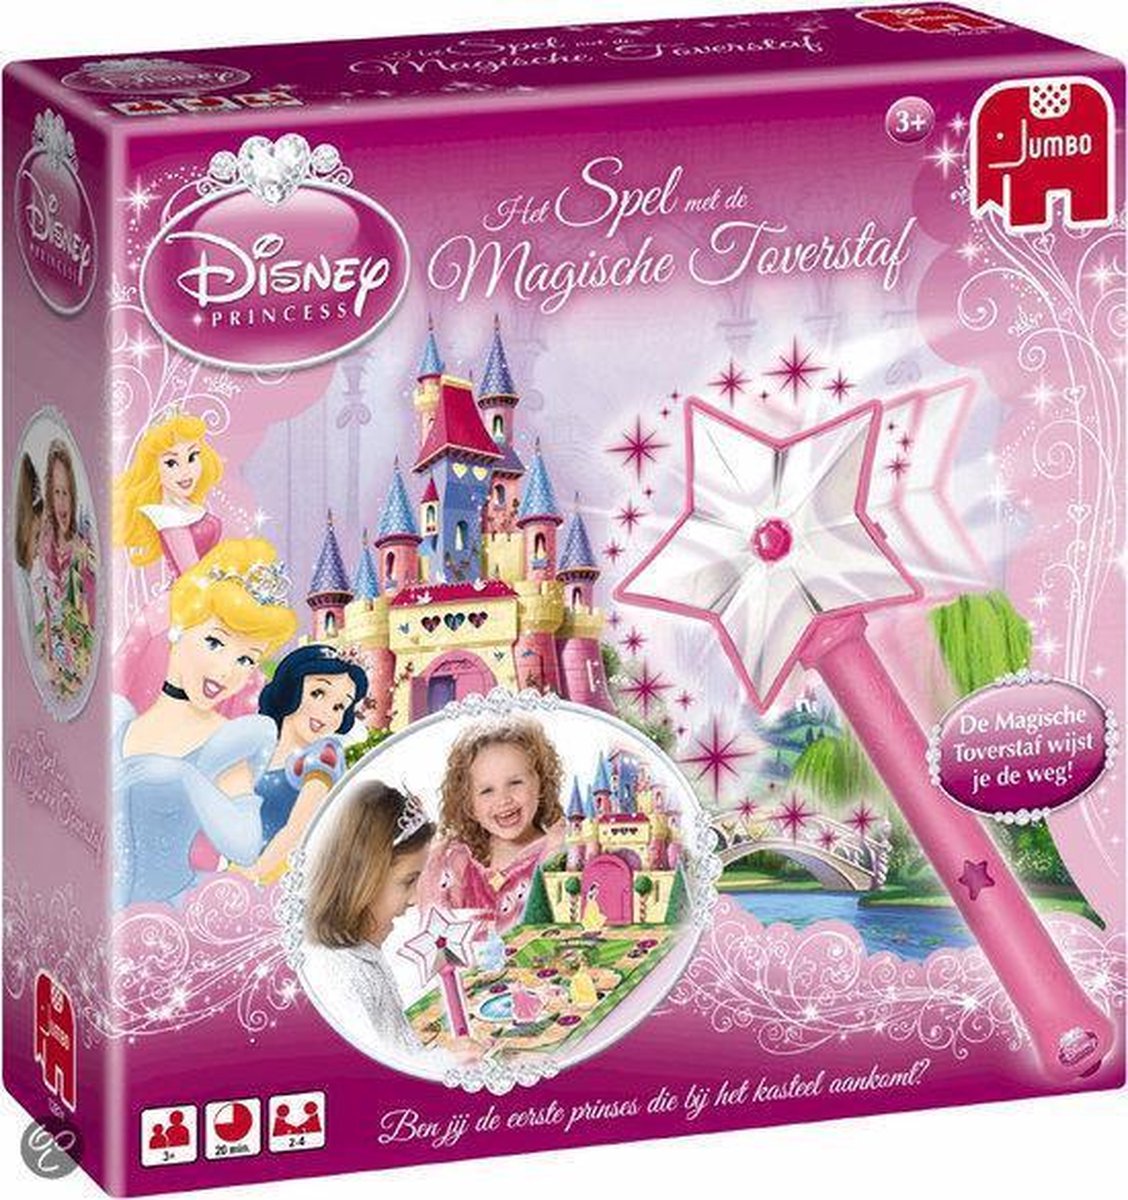 Disney Princess Het Spel met de Magische Toverstaf | Games |